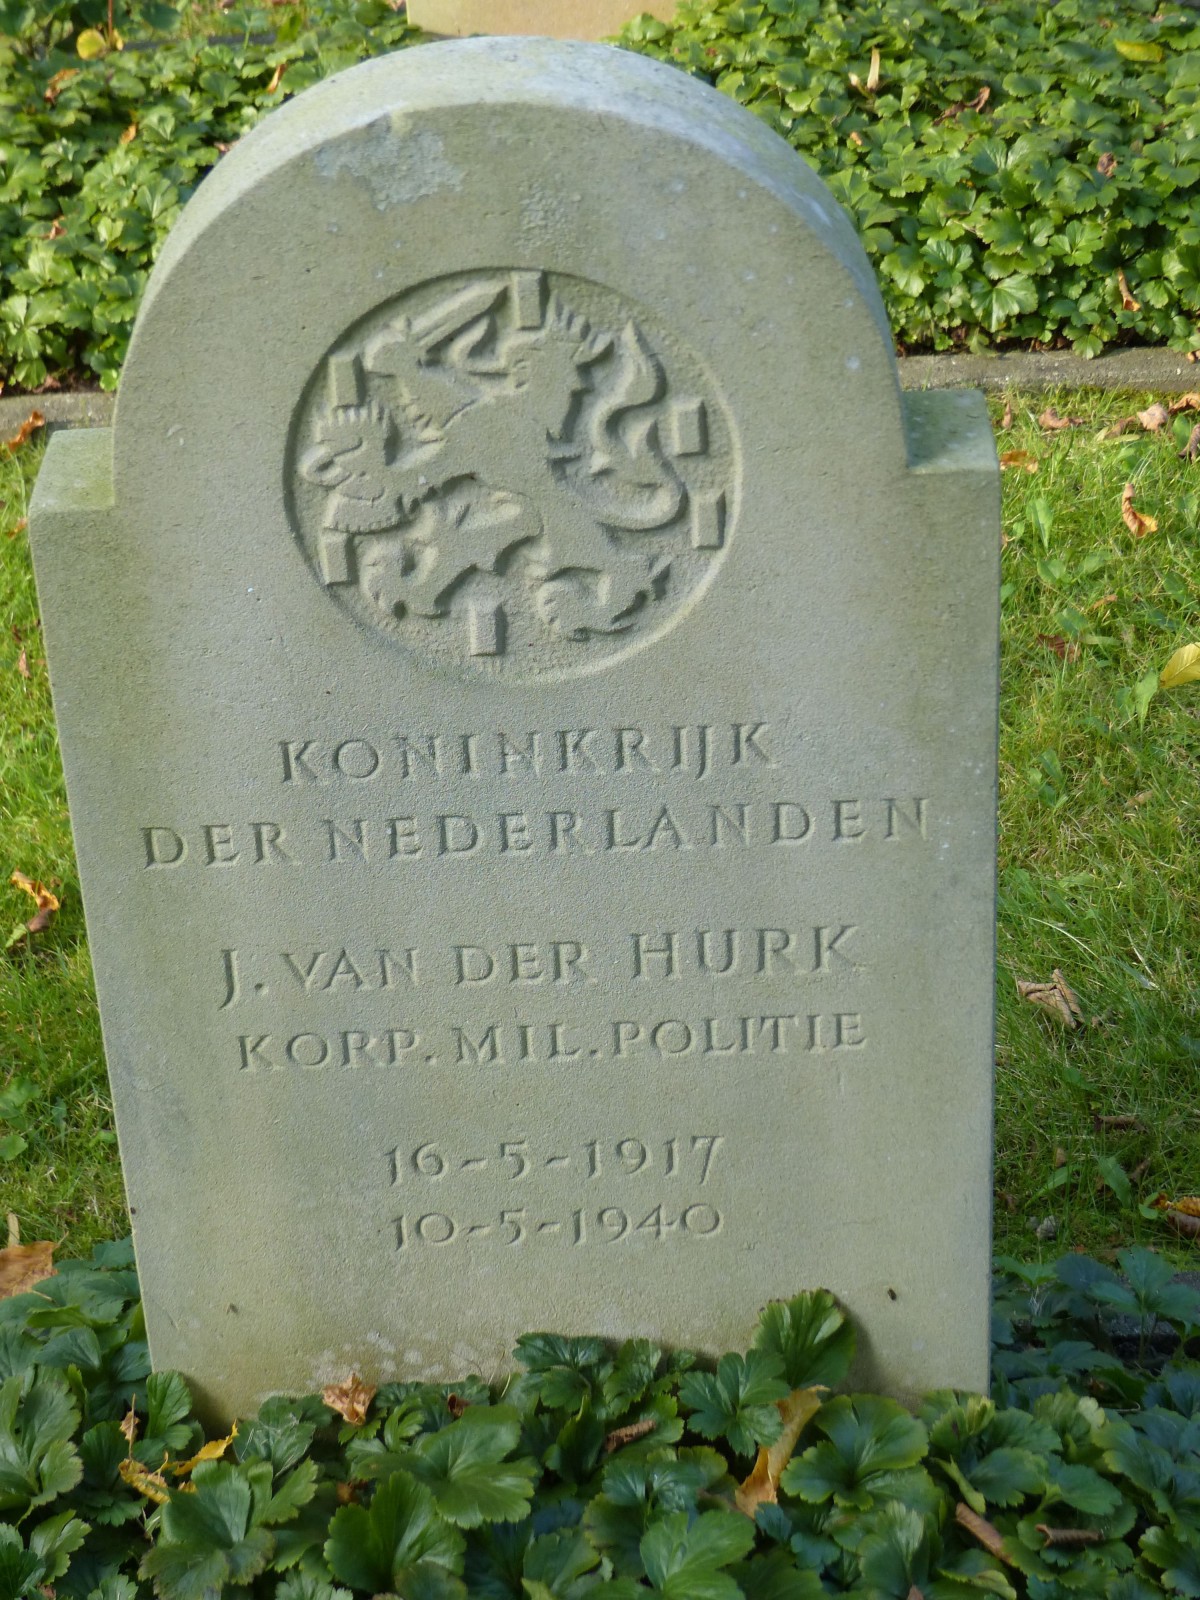 Jan van der Hurk